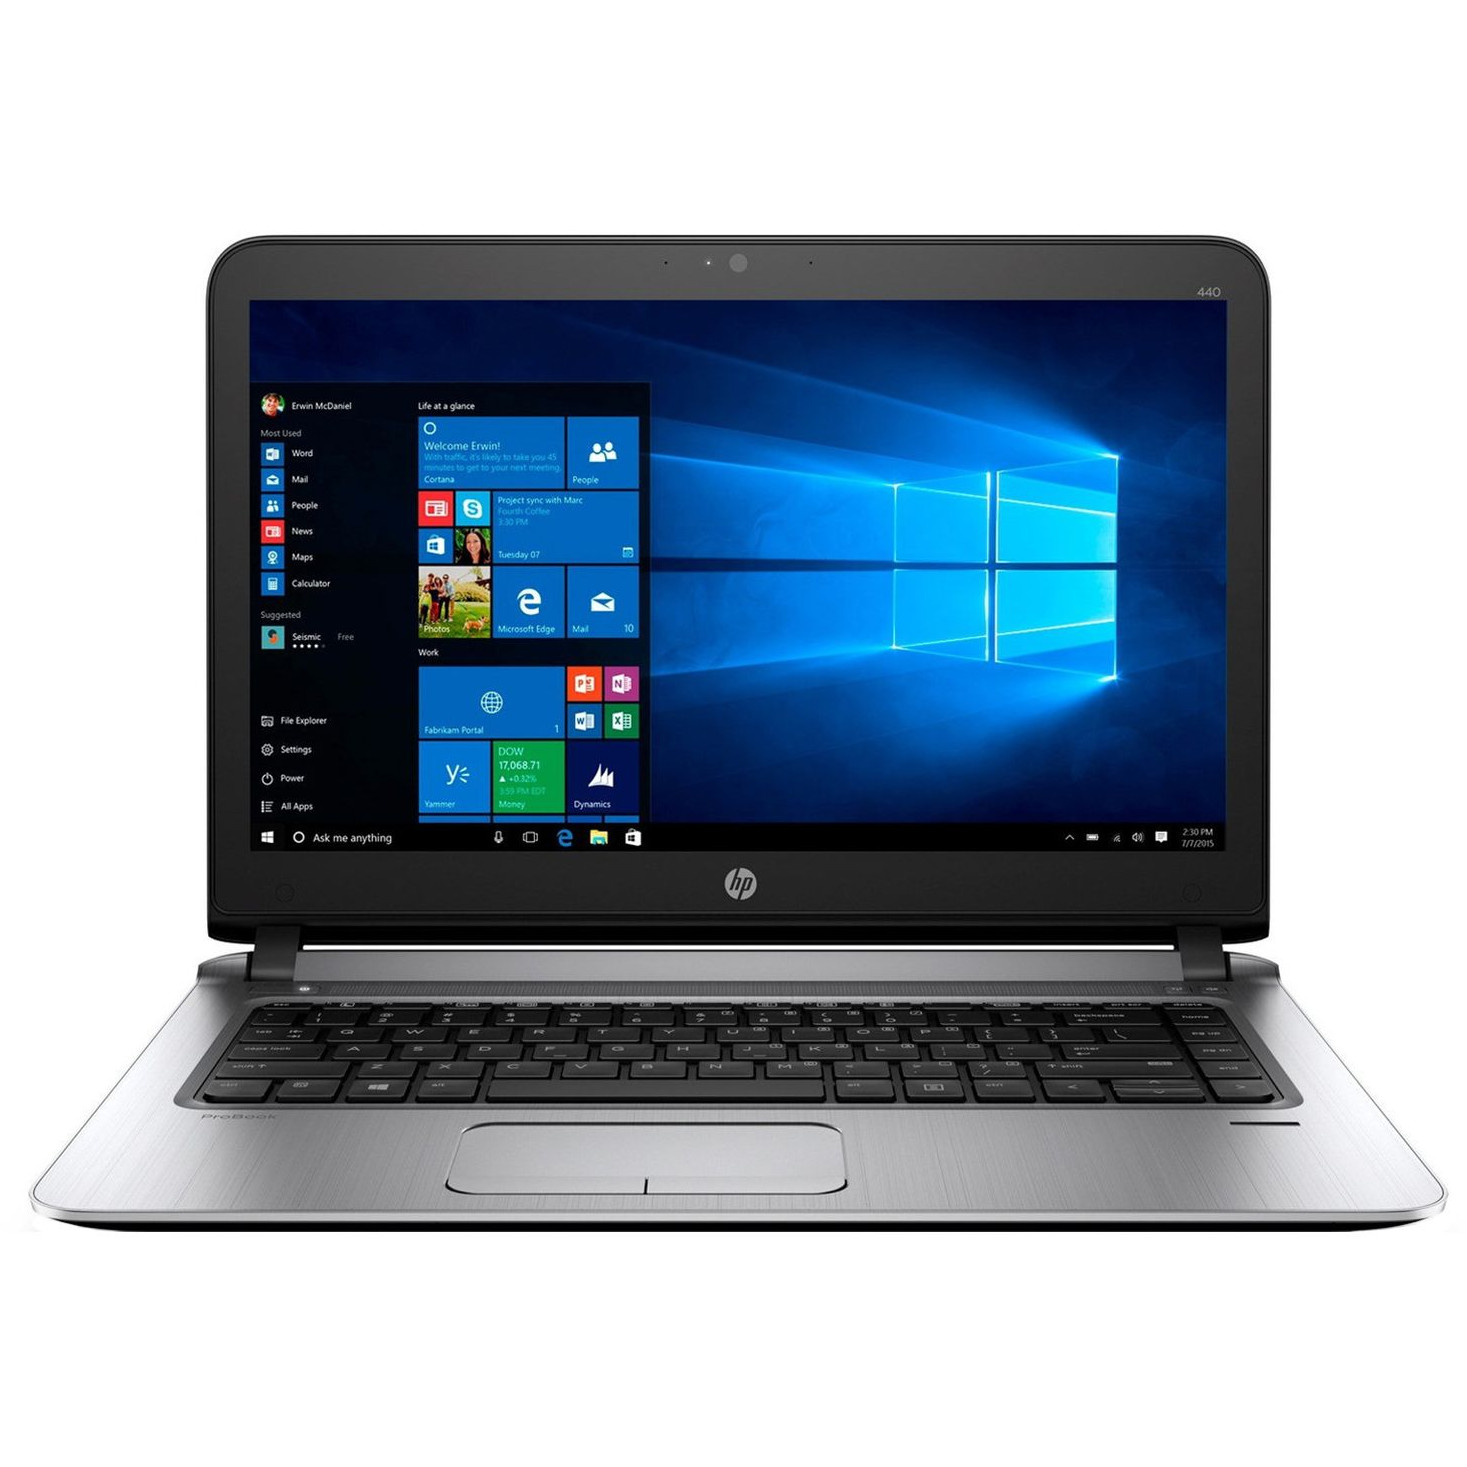 Laptop HP ProBook 440 G3, Intel Core i7-6500U, 8GB DDR3, SSD 256GB, Intel HD Graphics, Windows 10 Pro